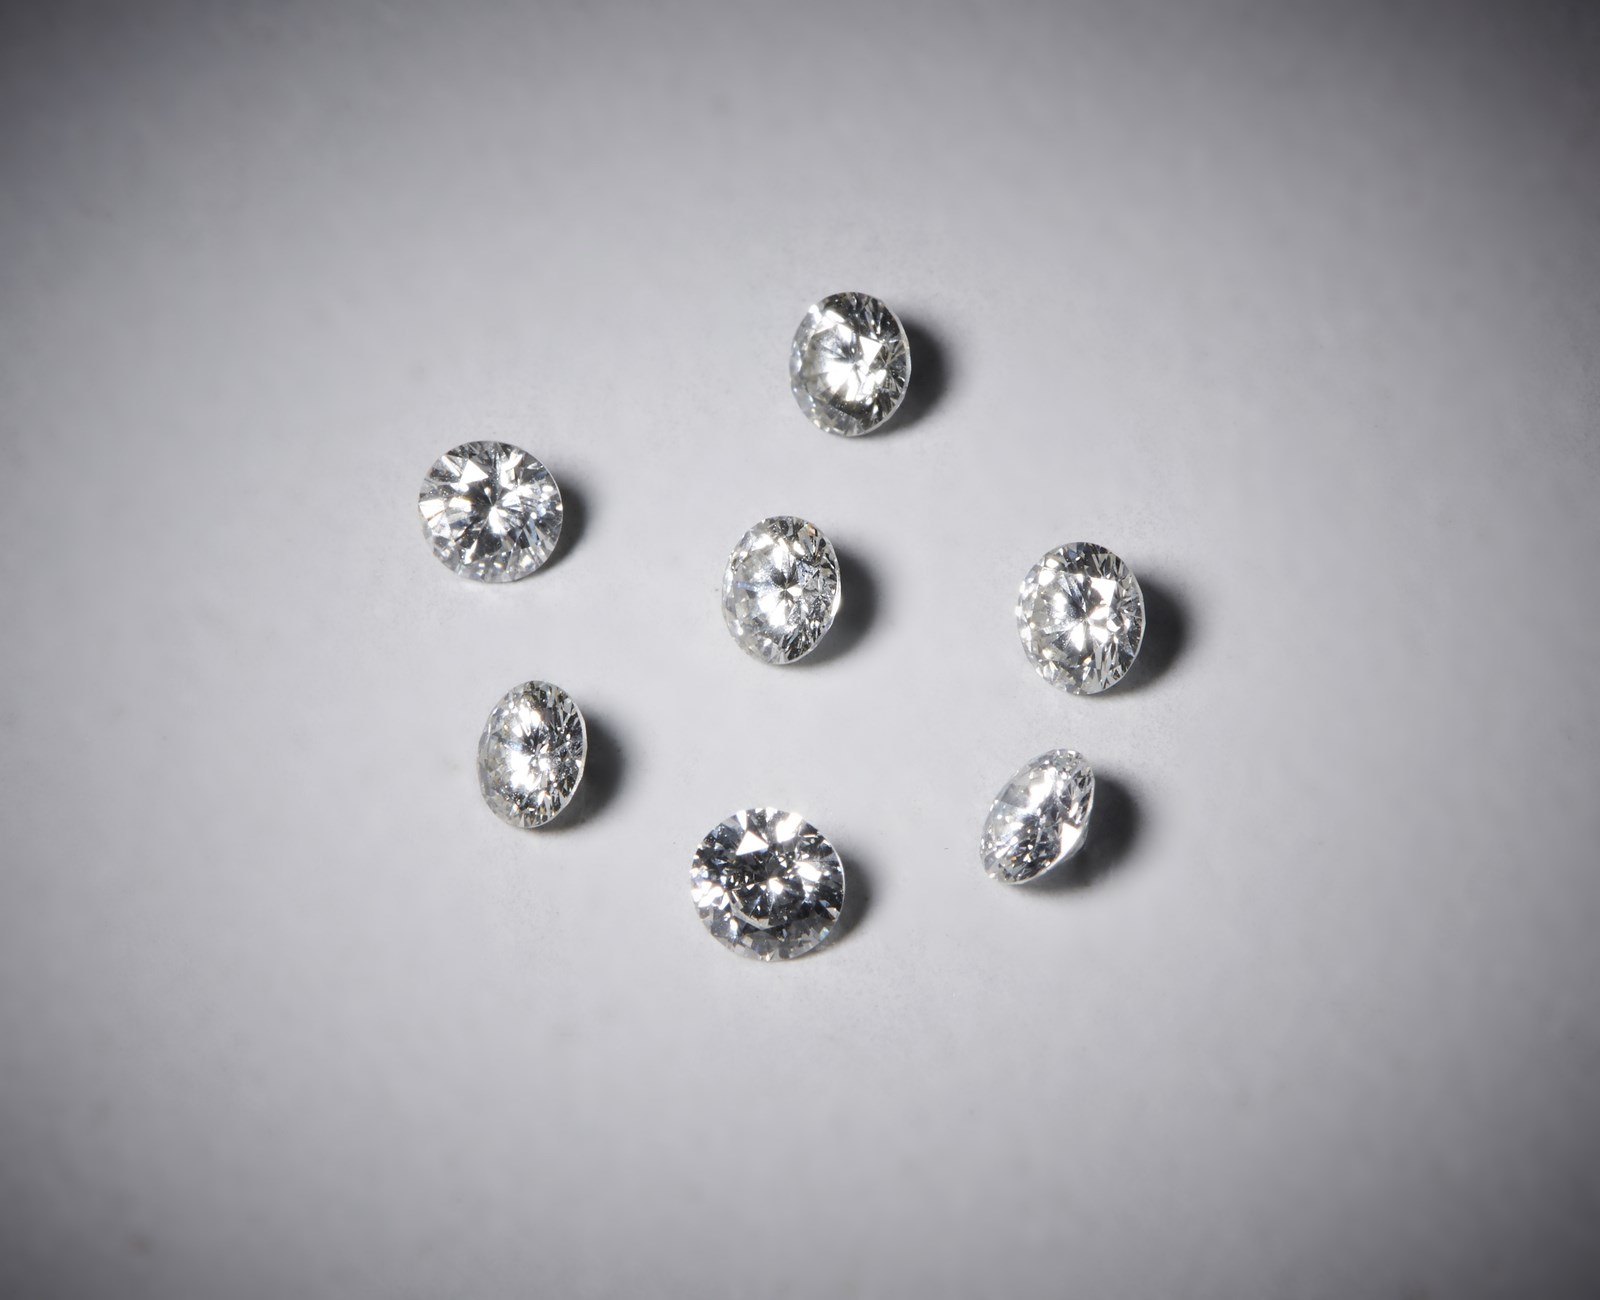 Seven round white diamonds brilliant cut of about 1.07 carats
F/G
VVS/VS (. )